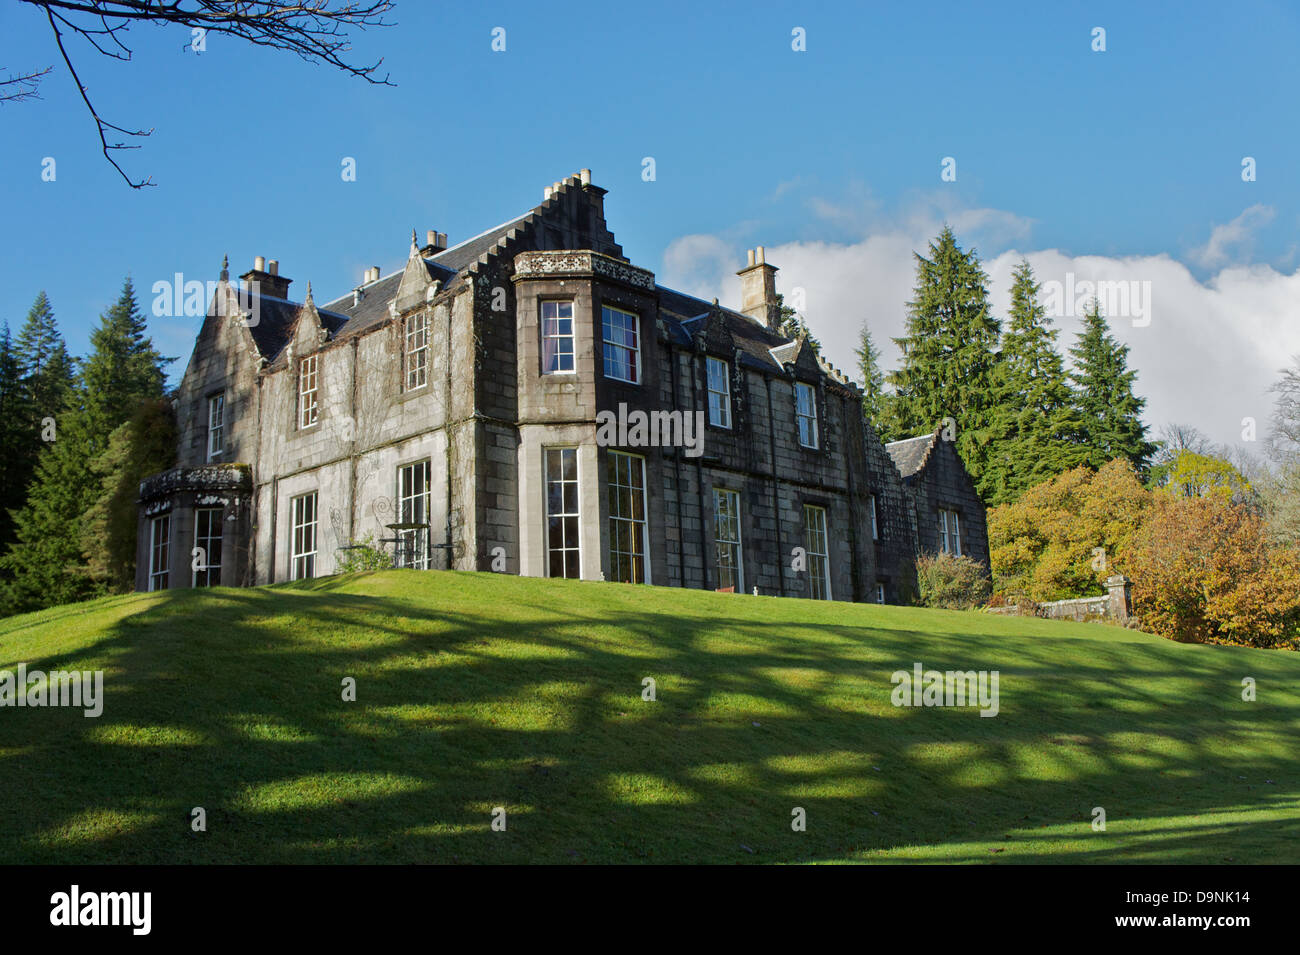 Ardanaiseig Hotel on the banks of Loch Awe, Kilchrenan, Argyll, Scotland Stock Photo